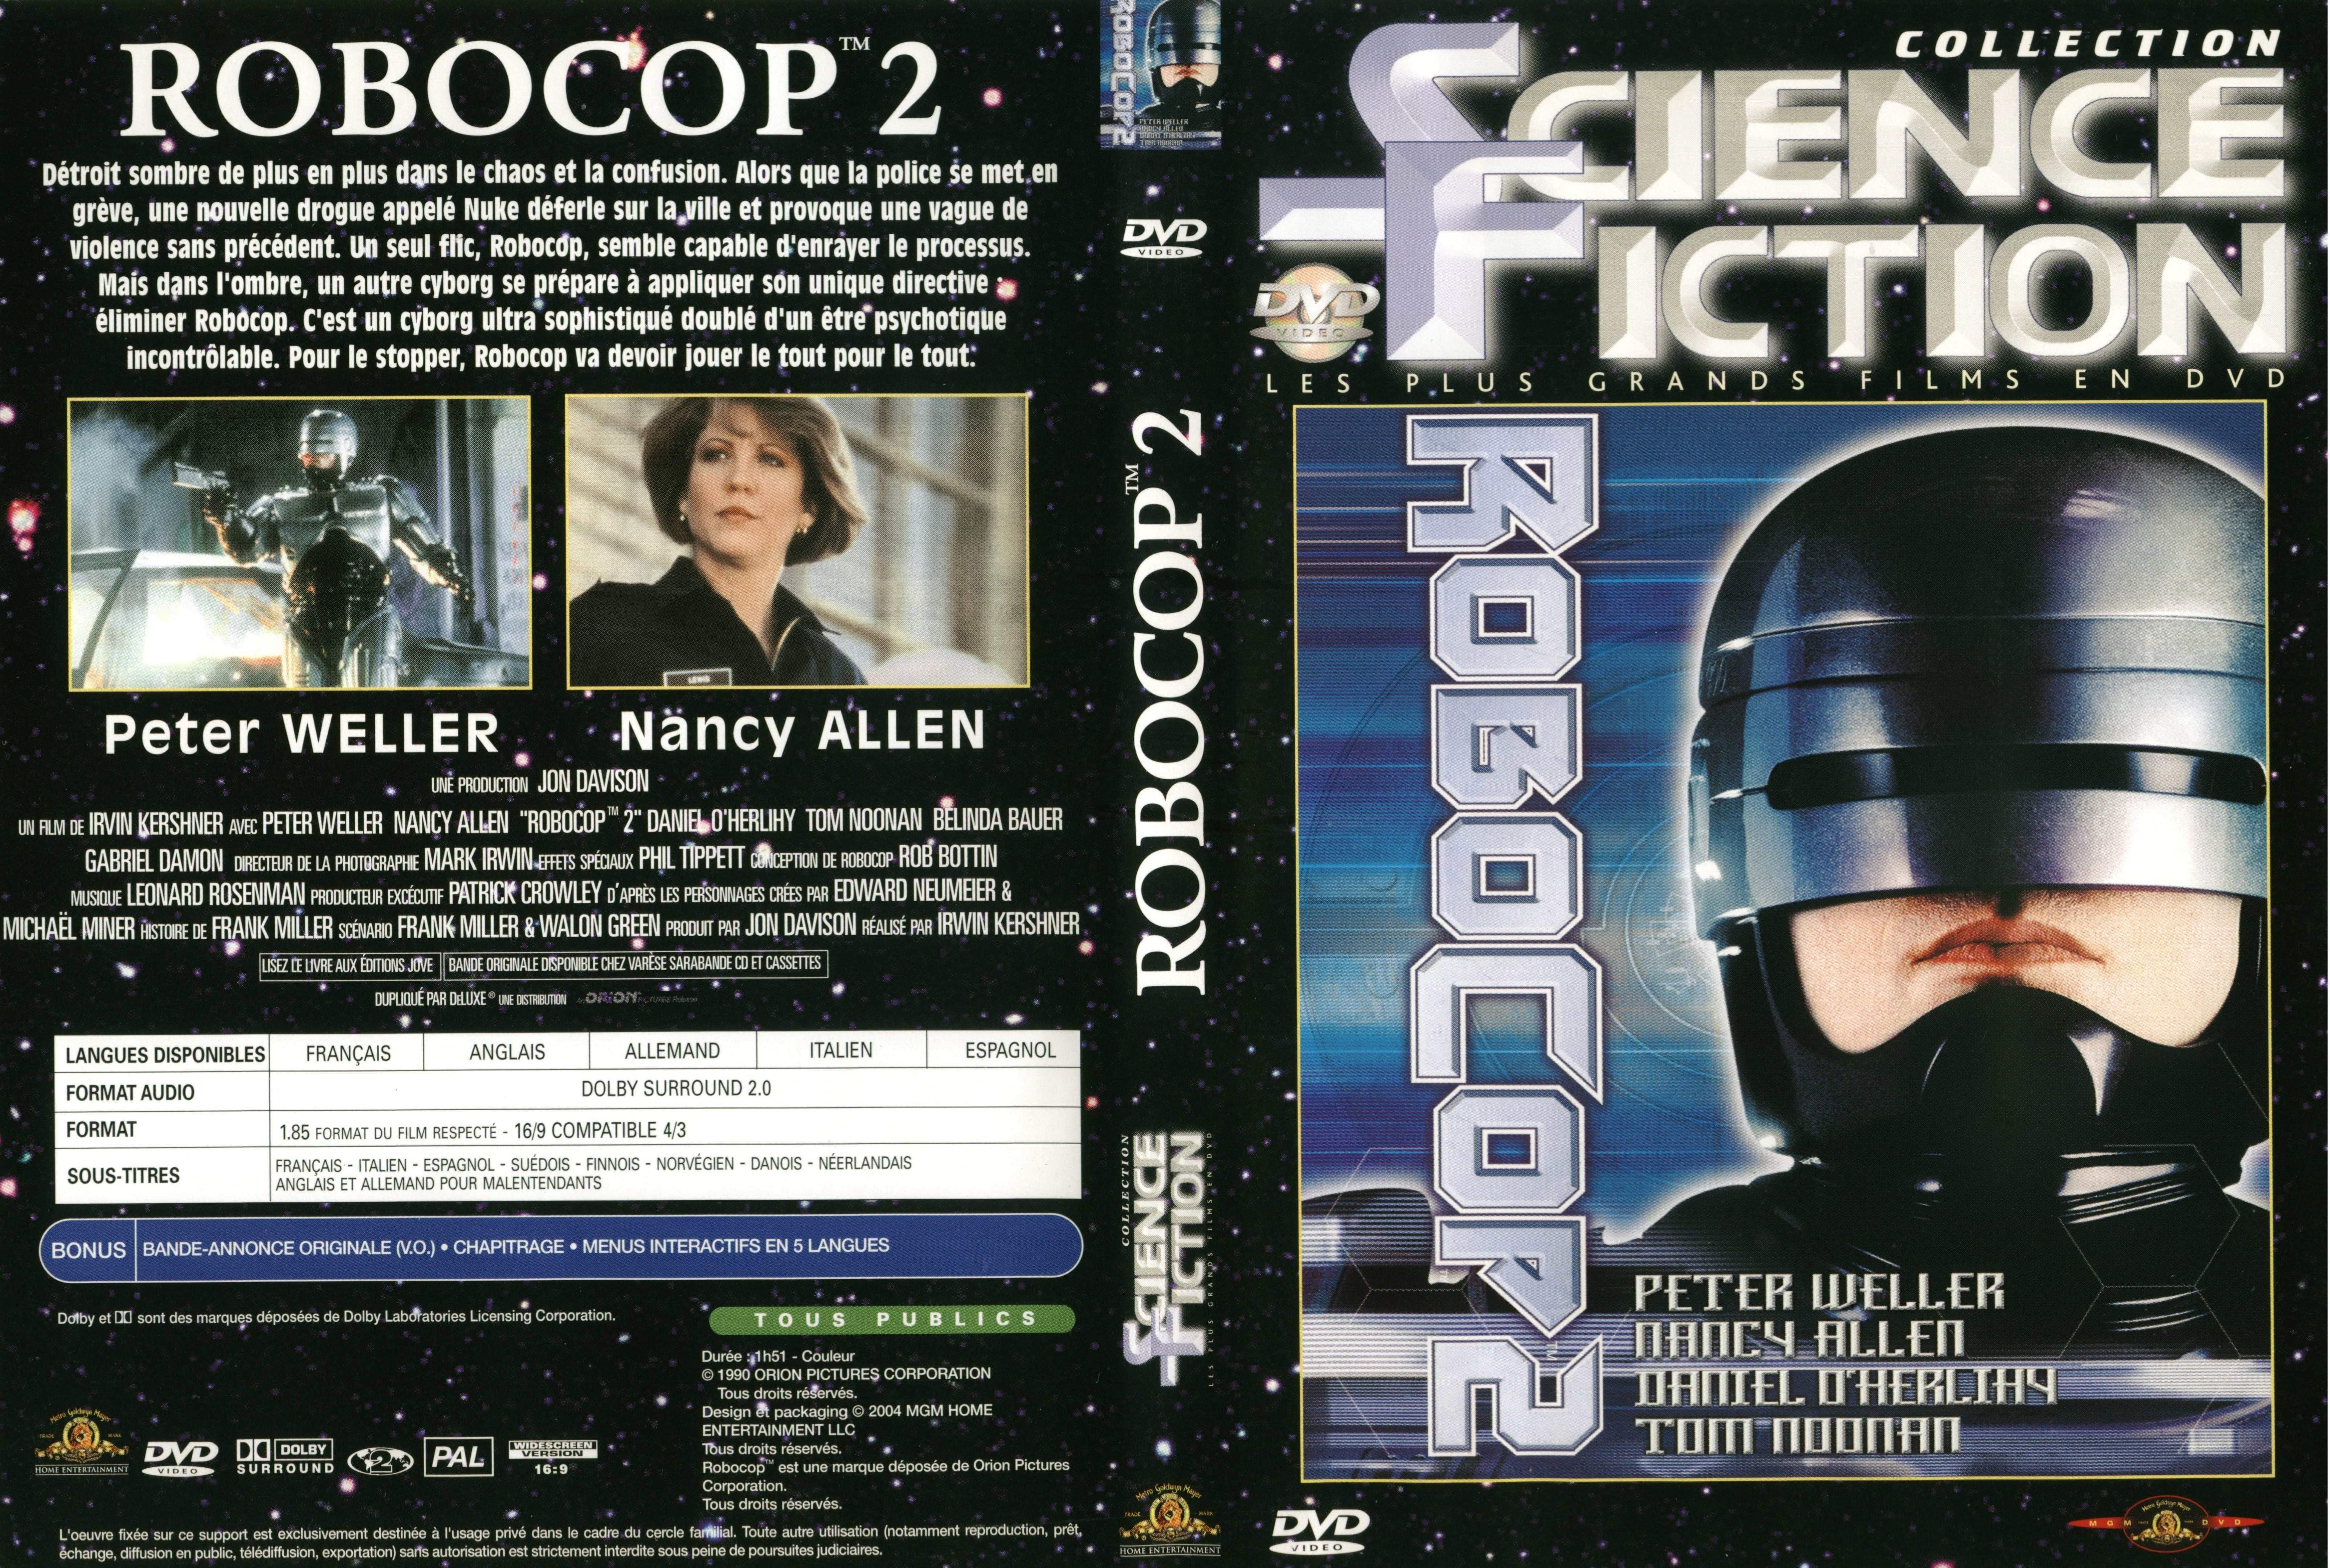 Jaquette DVD Robocop 2 v3